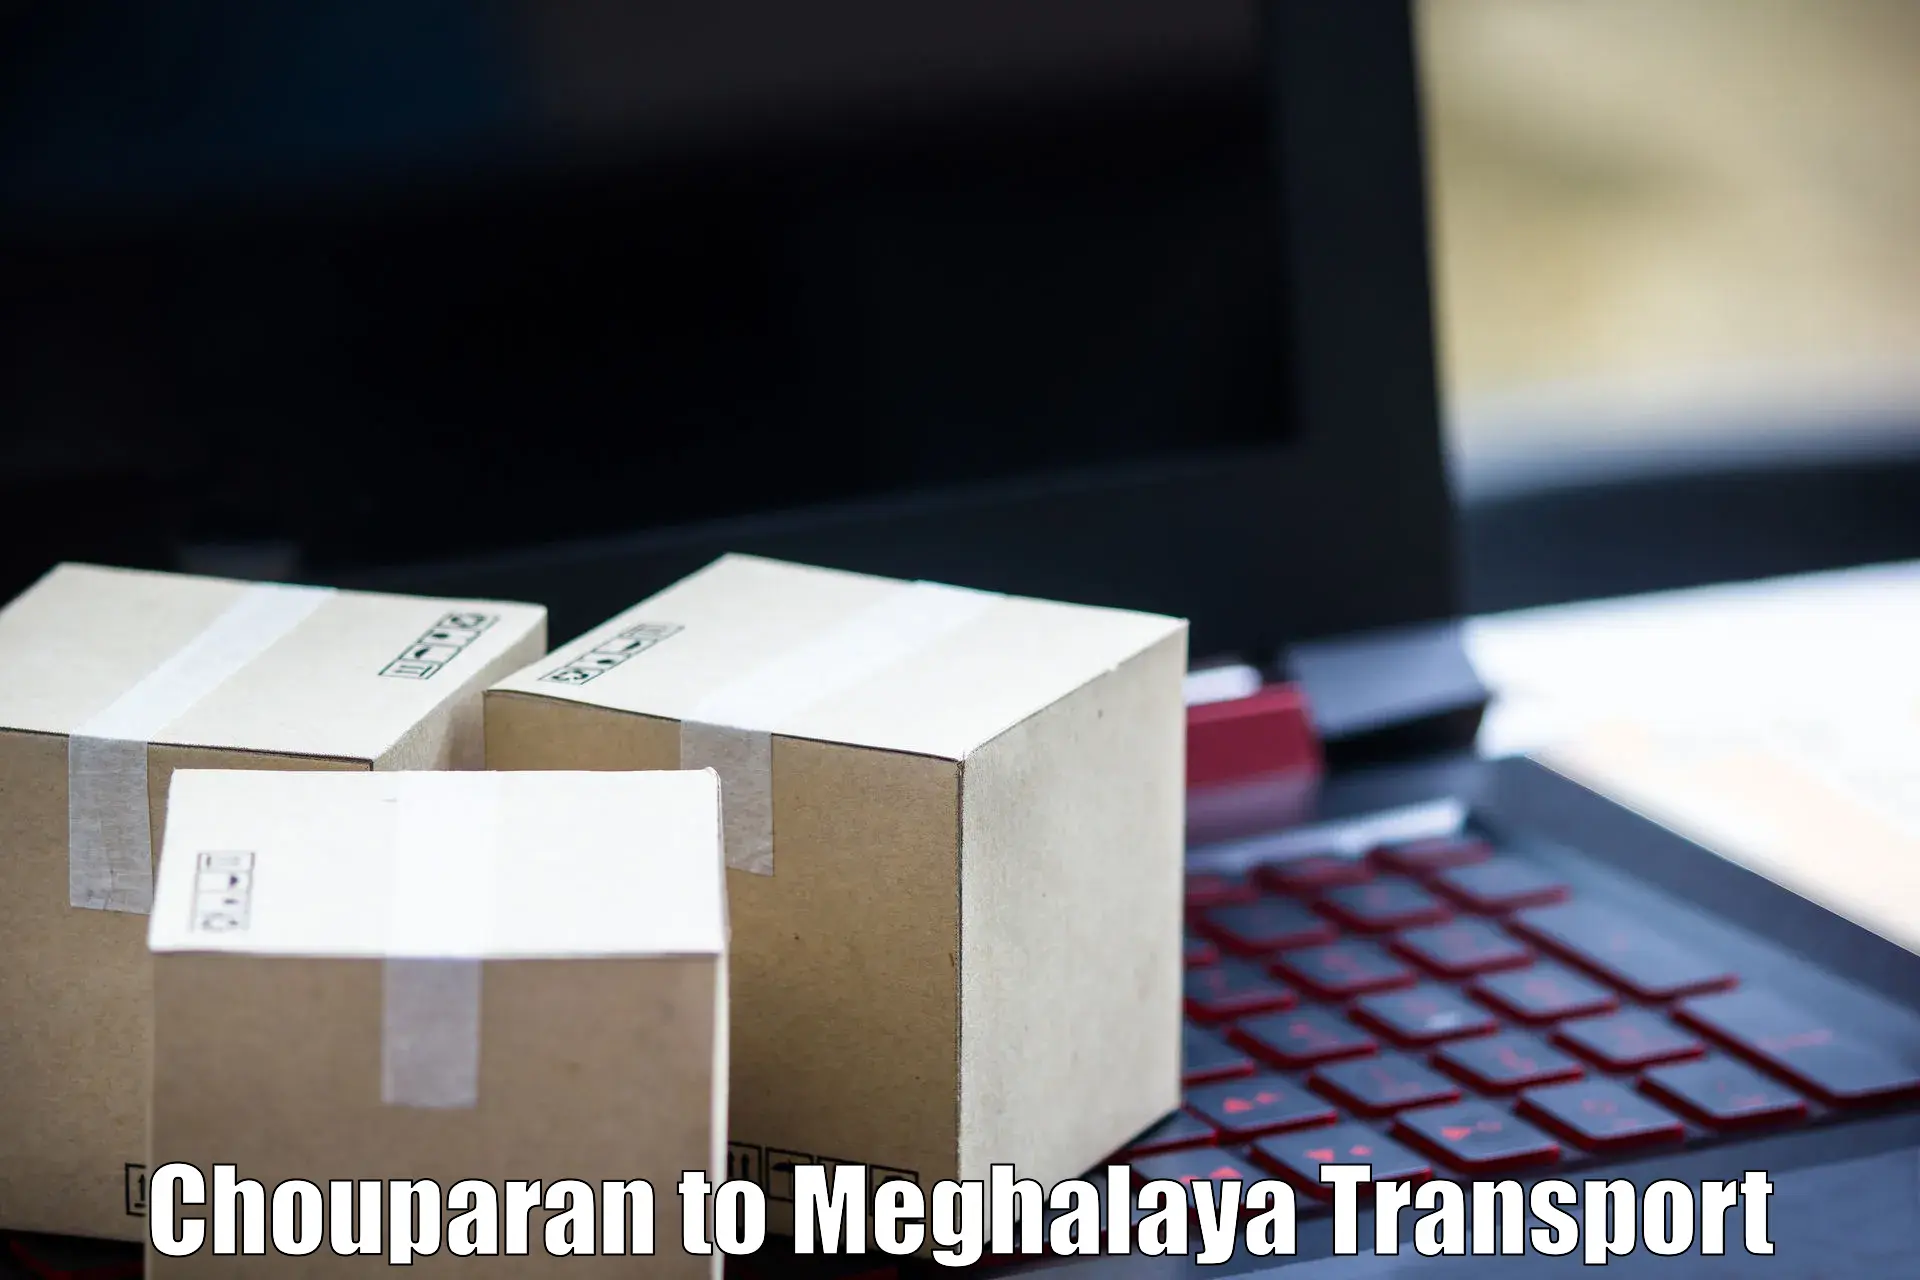 Vehicle parcel service Chouparan to Dkhiah West